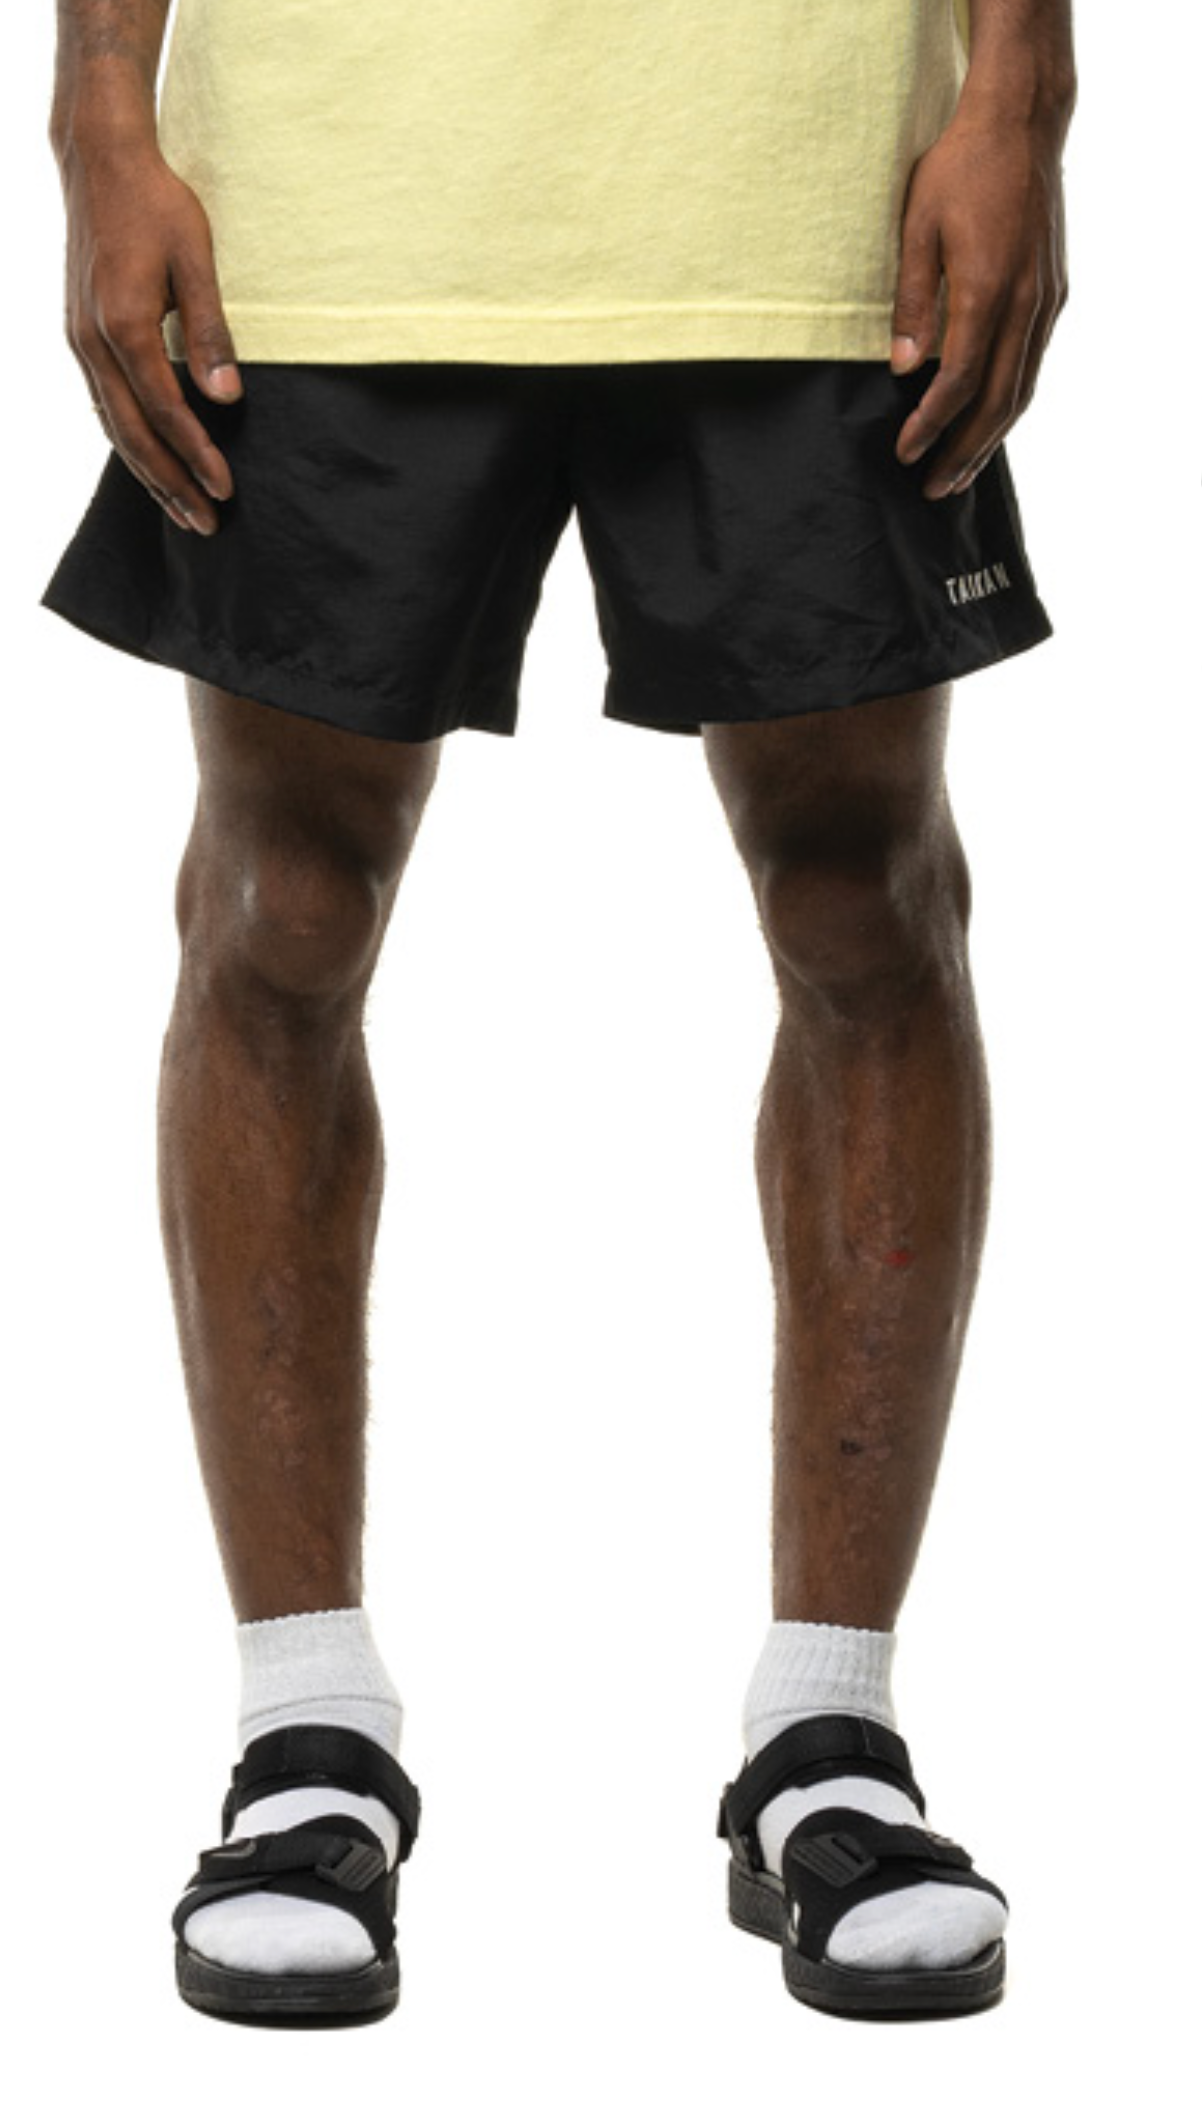 Taikan Nylon shorts - Black